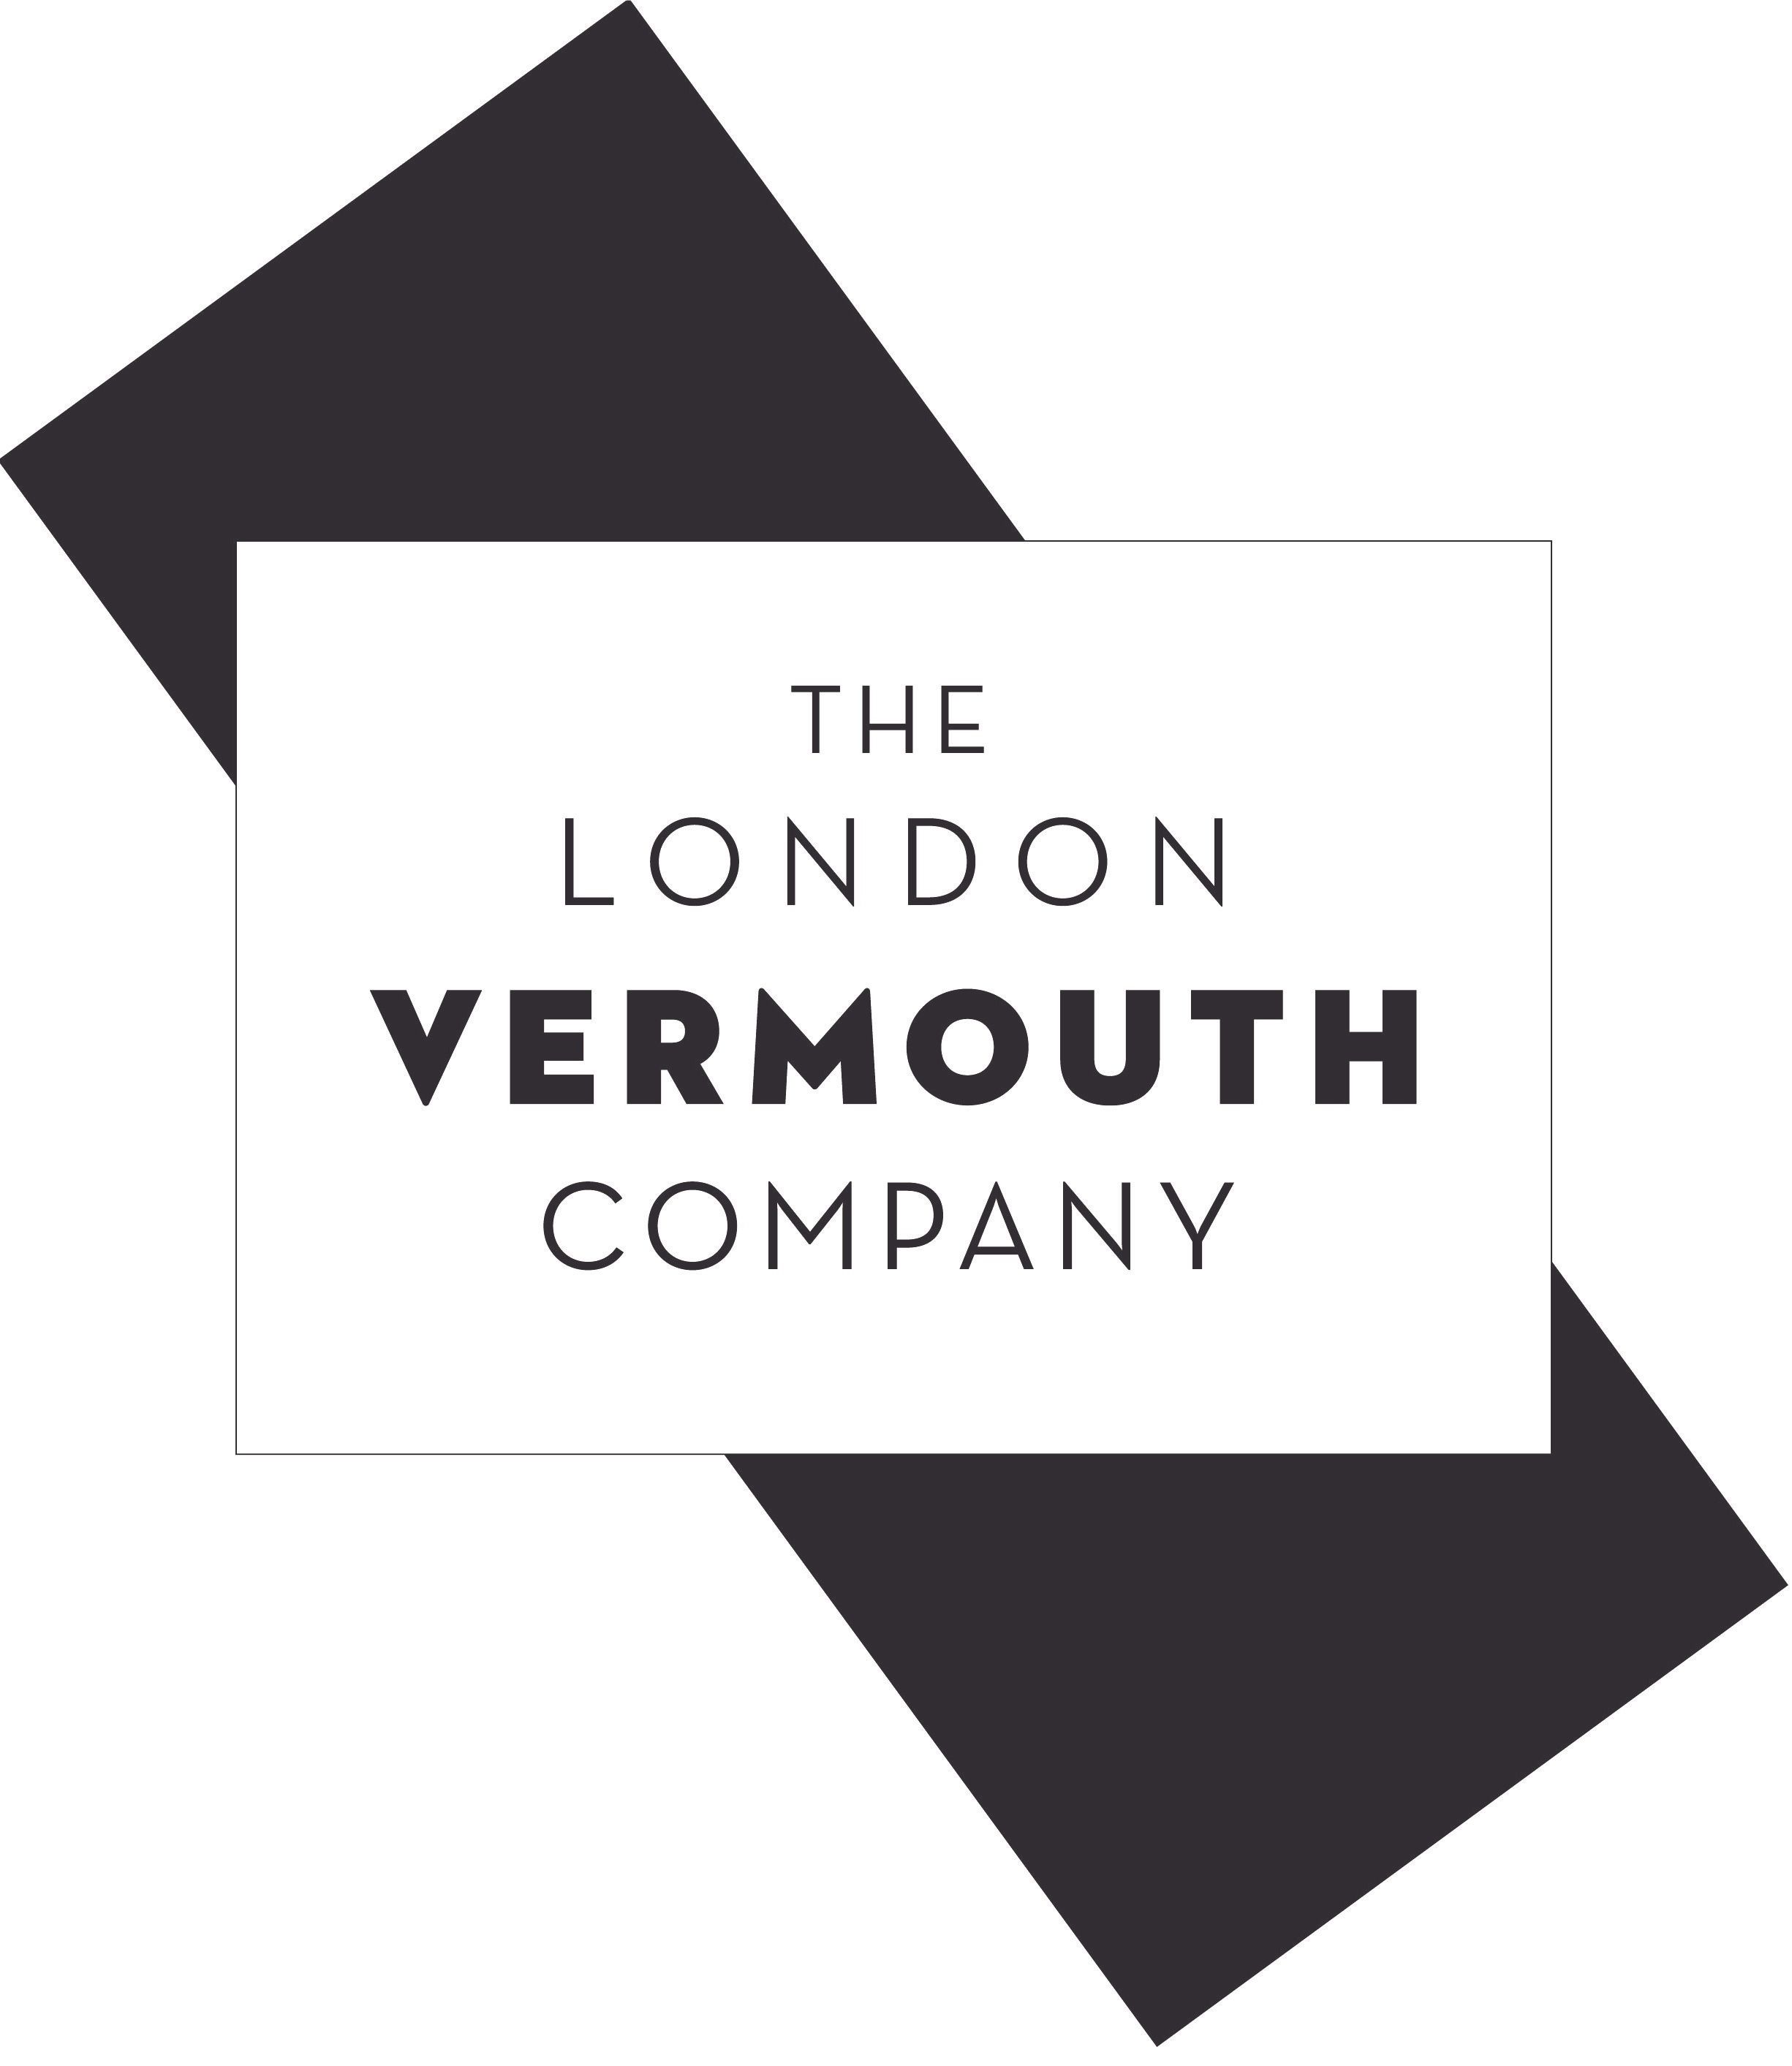 London Vermouth Company